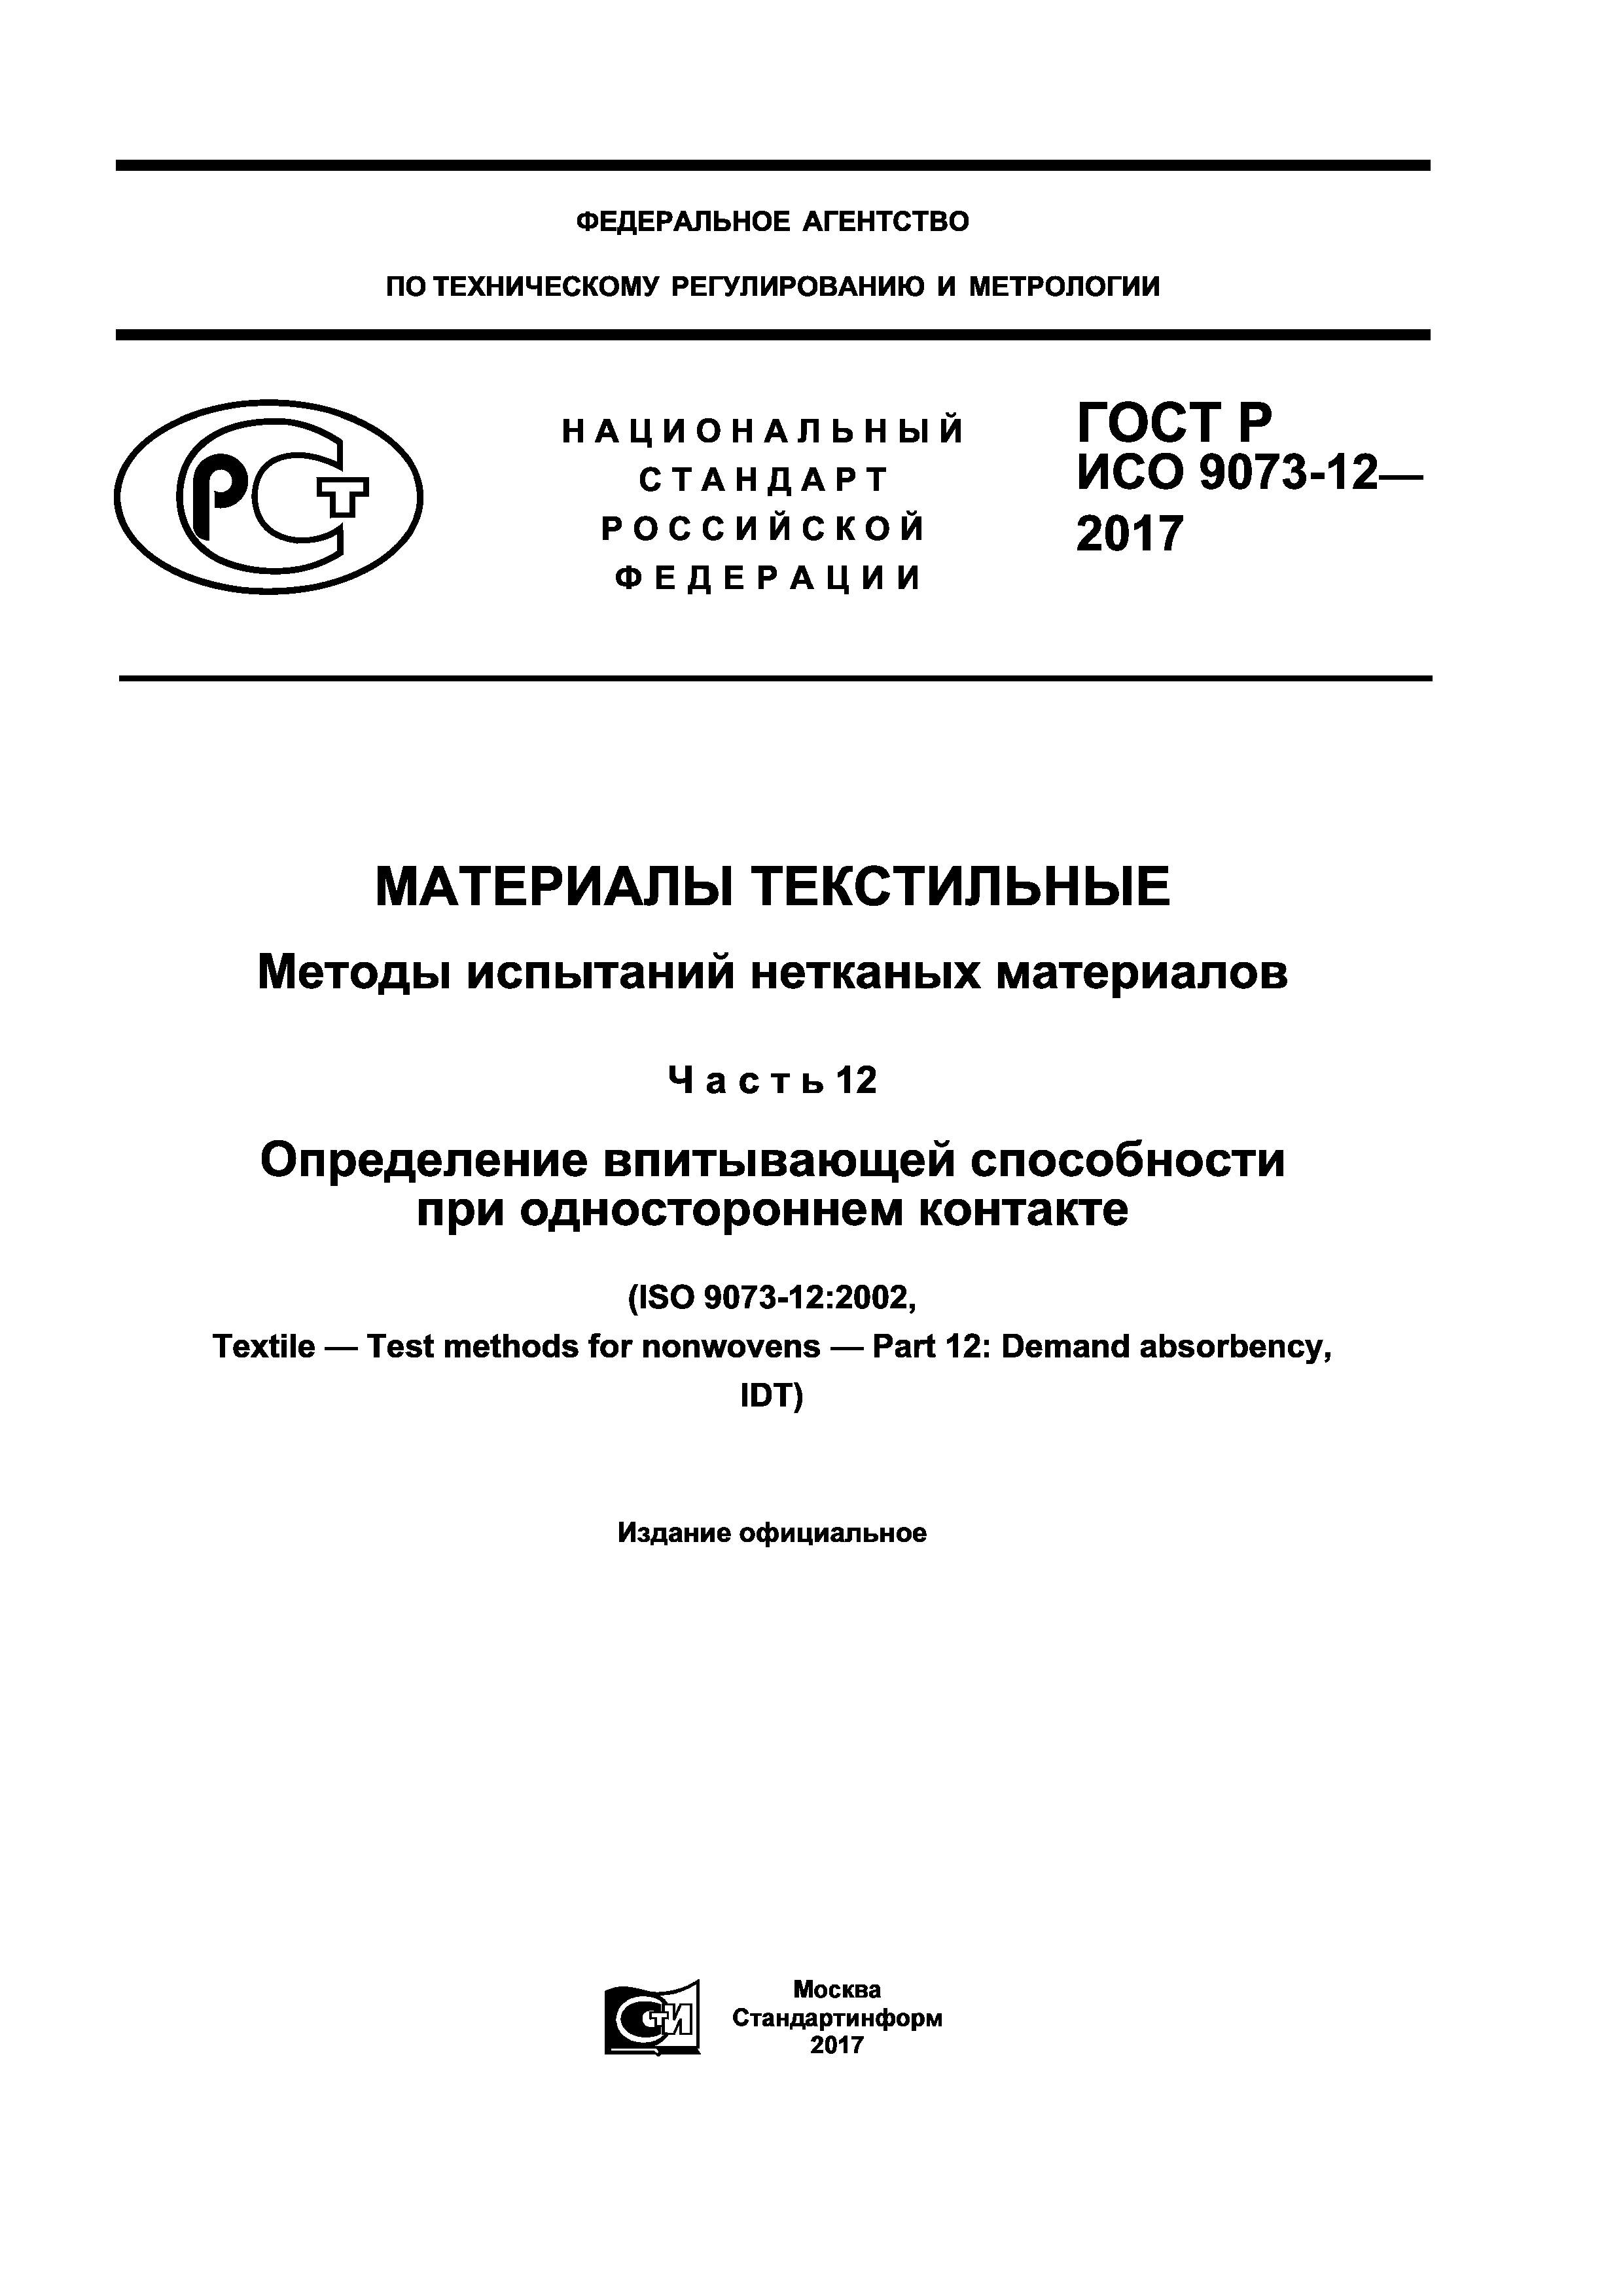 ГОСТ Р ИСО 9073-12-2017